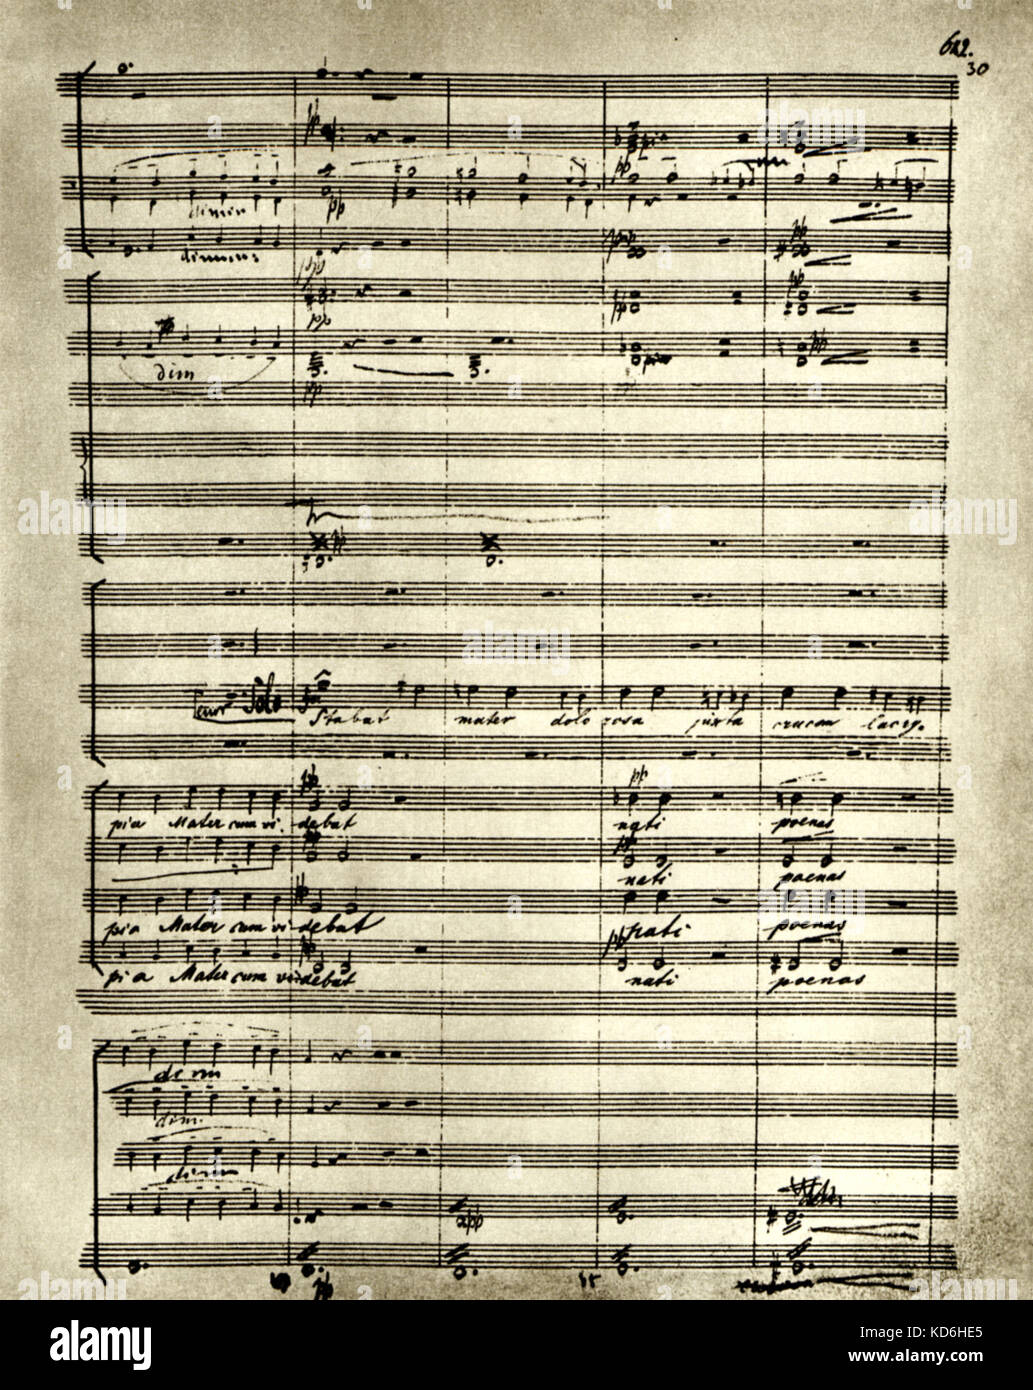 Dvorak's tabat Mater", Opus 58, Seite von Score. Zusammensetzung für Solo, Chor und Orchester. Komponiert als Ausdruck seiner persönlichen Trauer über den Verlust seiner Kinder. Tschechischen Komponisten (1841-1904). Stockfoto